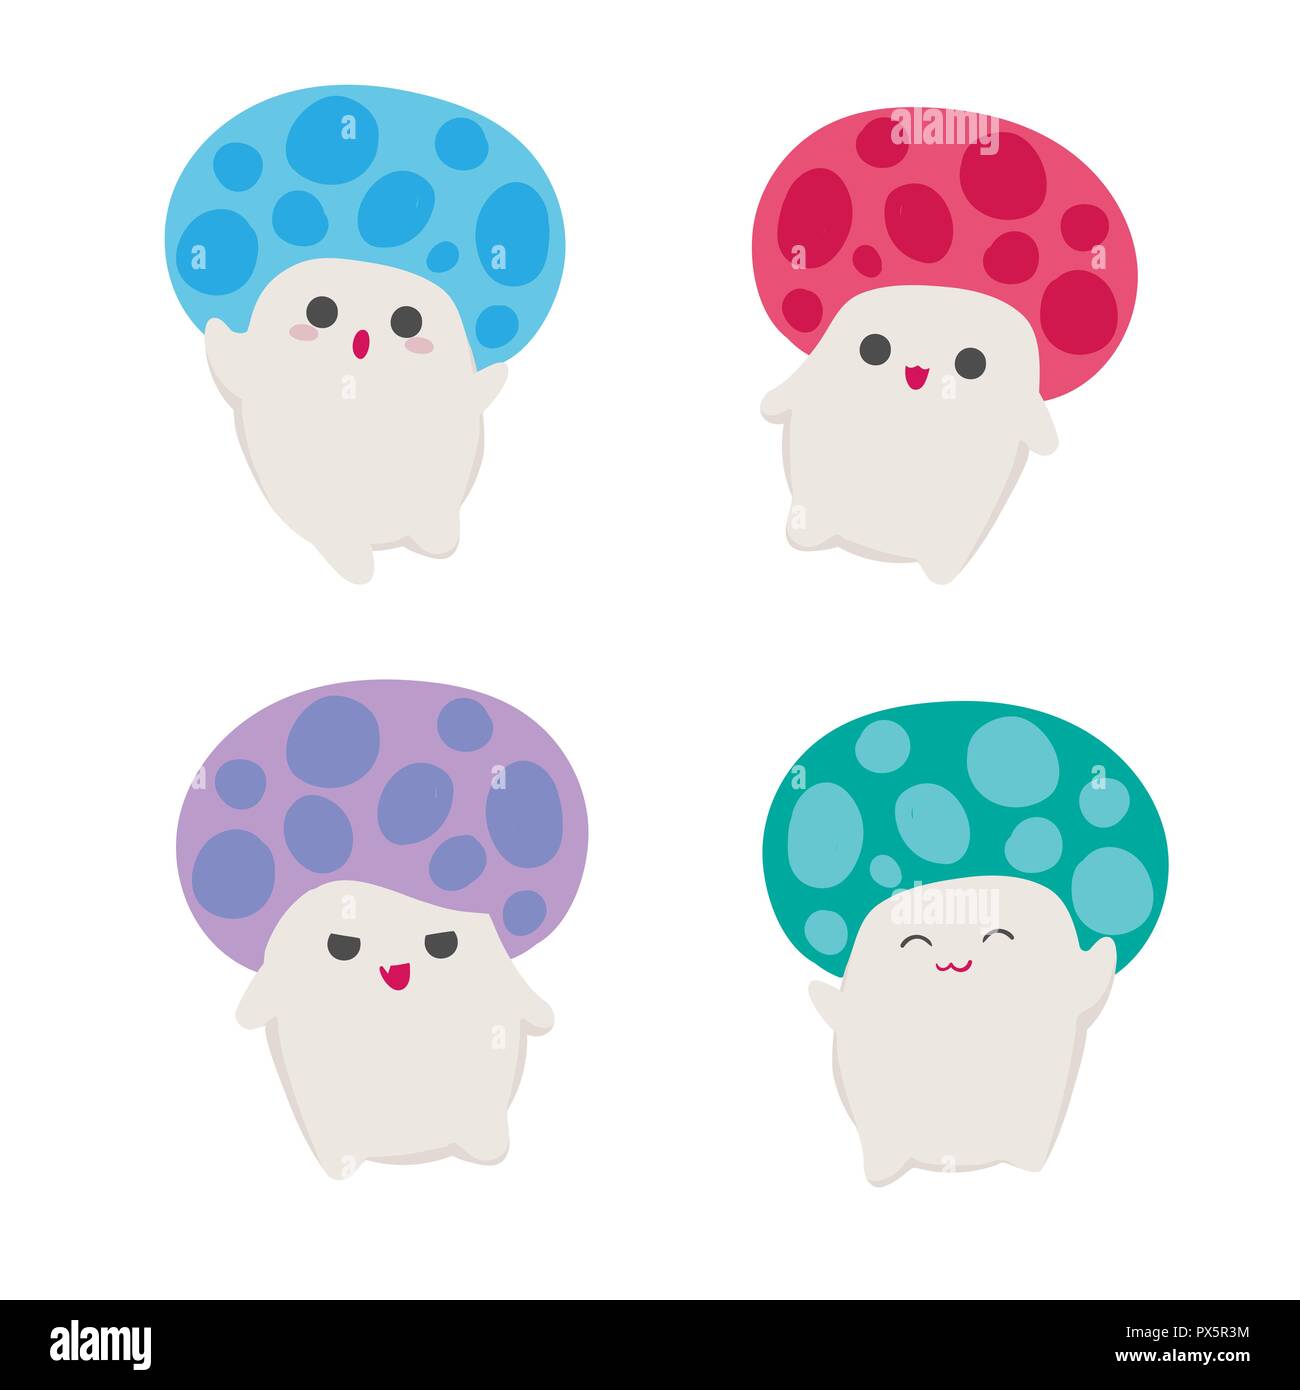 Kawaii funghi caratteri stile asiatico illustrazione vettoriale set o raccolta di simpatici i funghi commestibili con facce ed espressioni felici, arrabbiato, male, Illustrazione Vettoriale